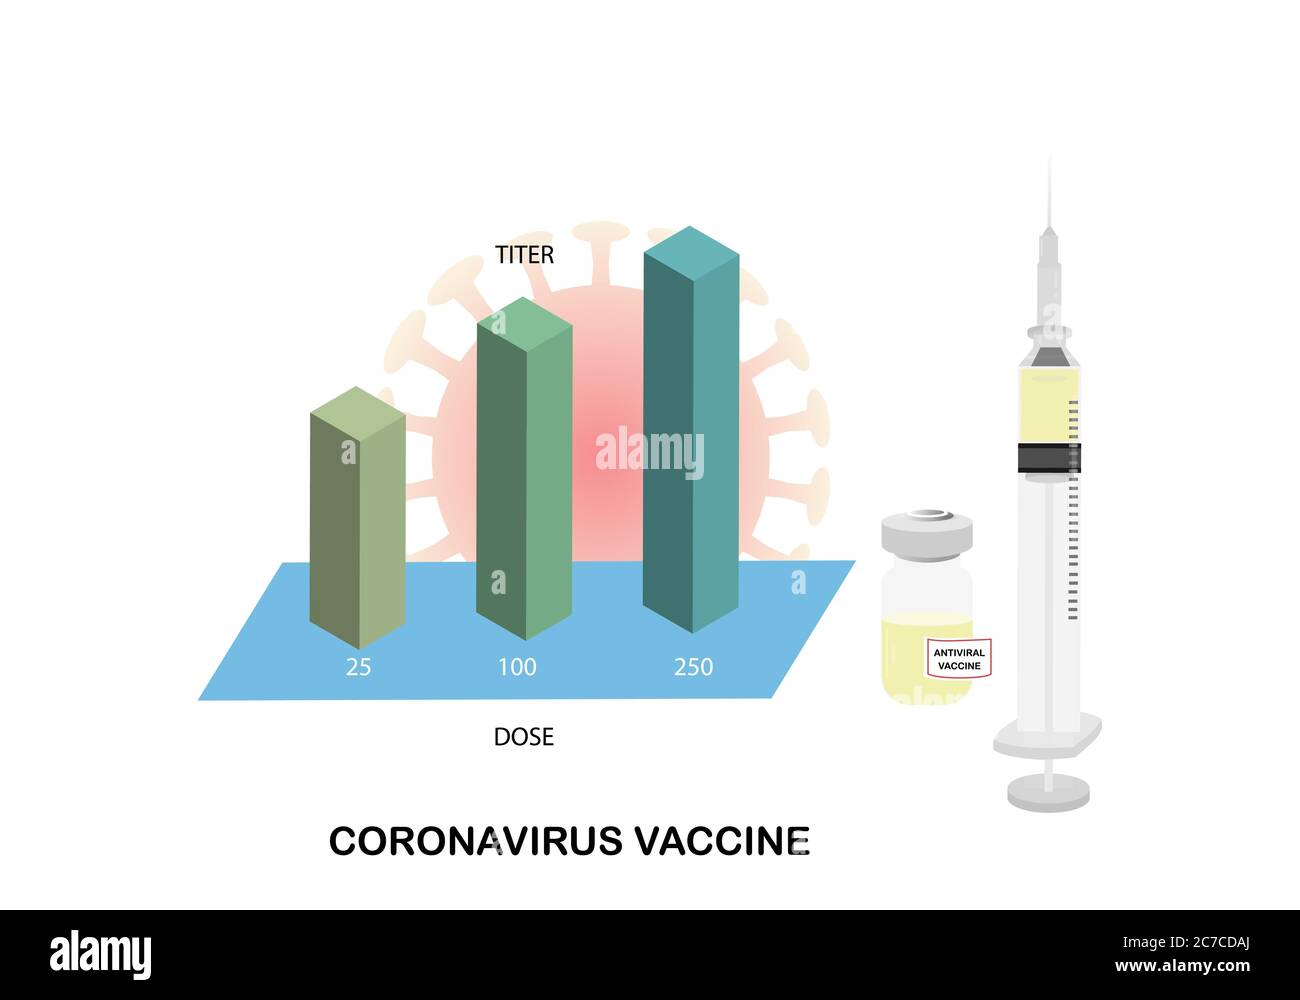 Abbildung einer Spritze mit Nadel und einer Flasche Impfstoff zur Immunisierung gegen Coronavirus. Balkendiagramm mit Titer des Antikörpers in verschiedenen DOS Stock Vektor